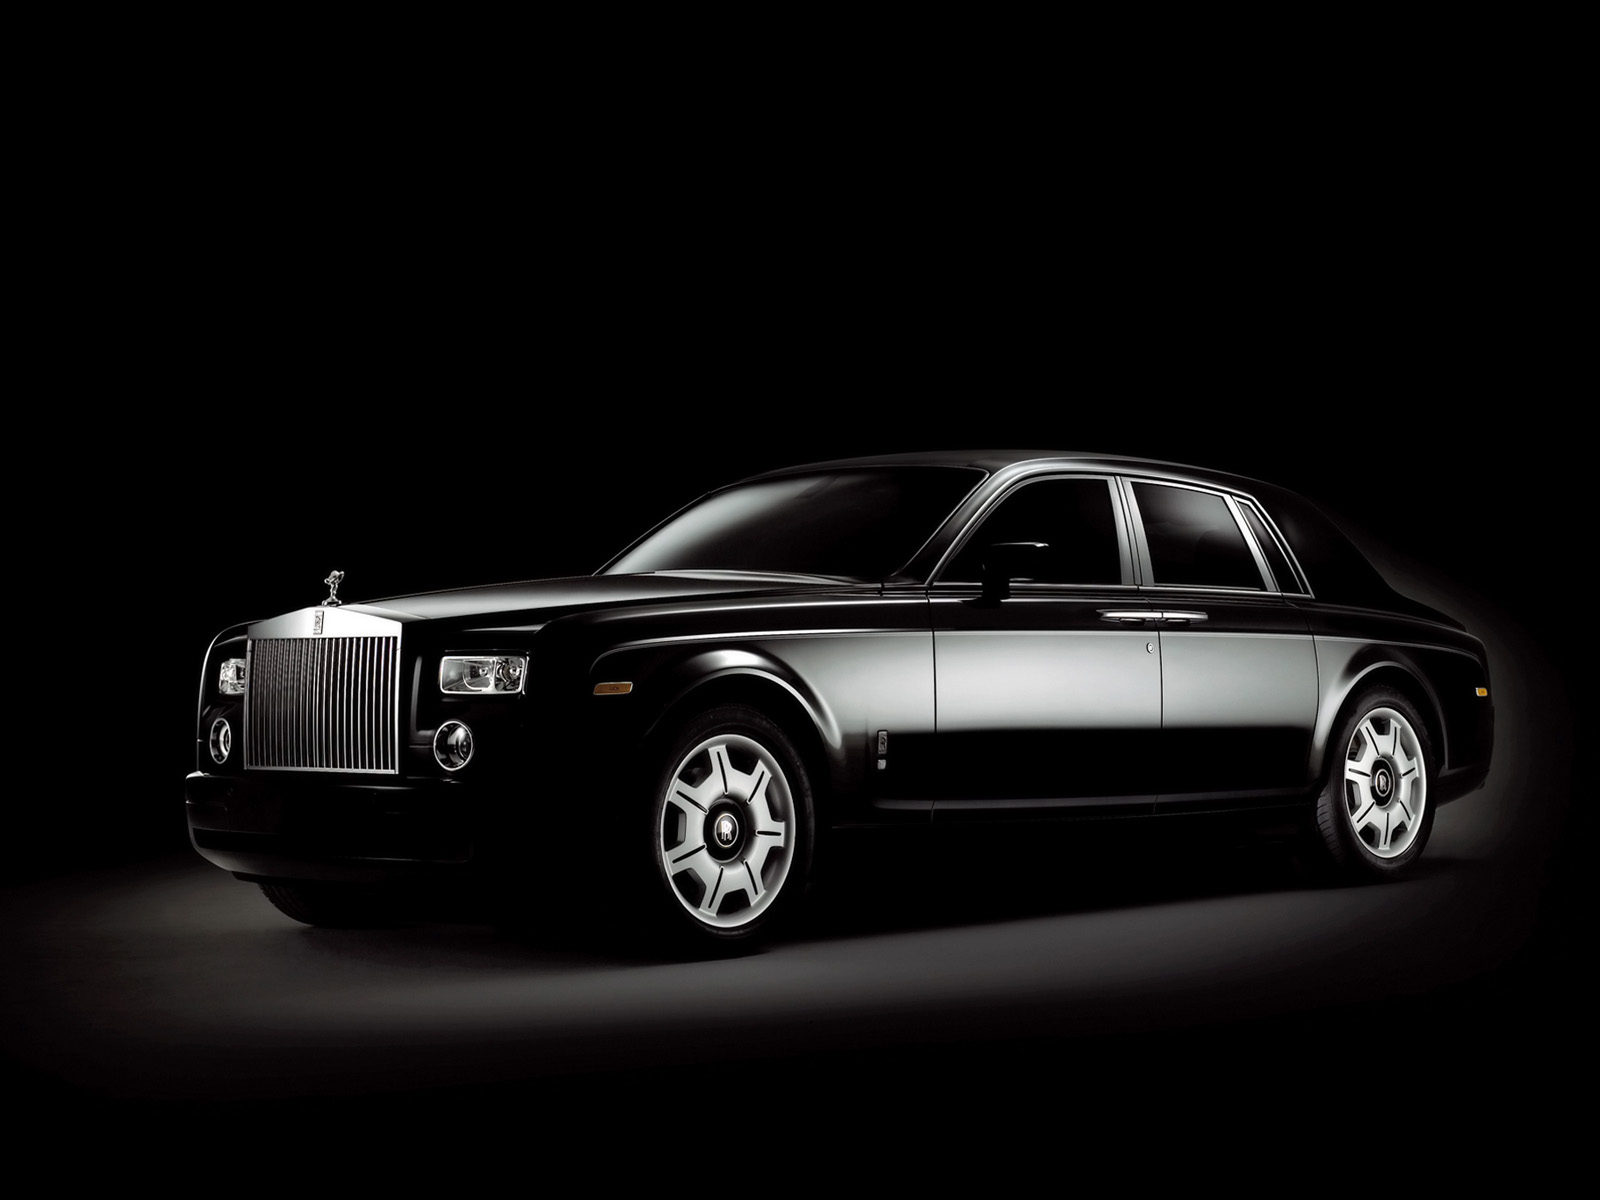 2006 Rolls Royce Phantom Black SA 1600 x 1200